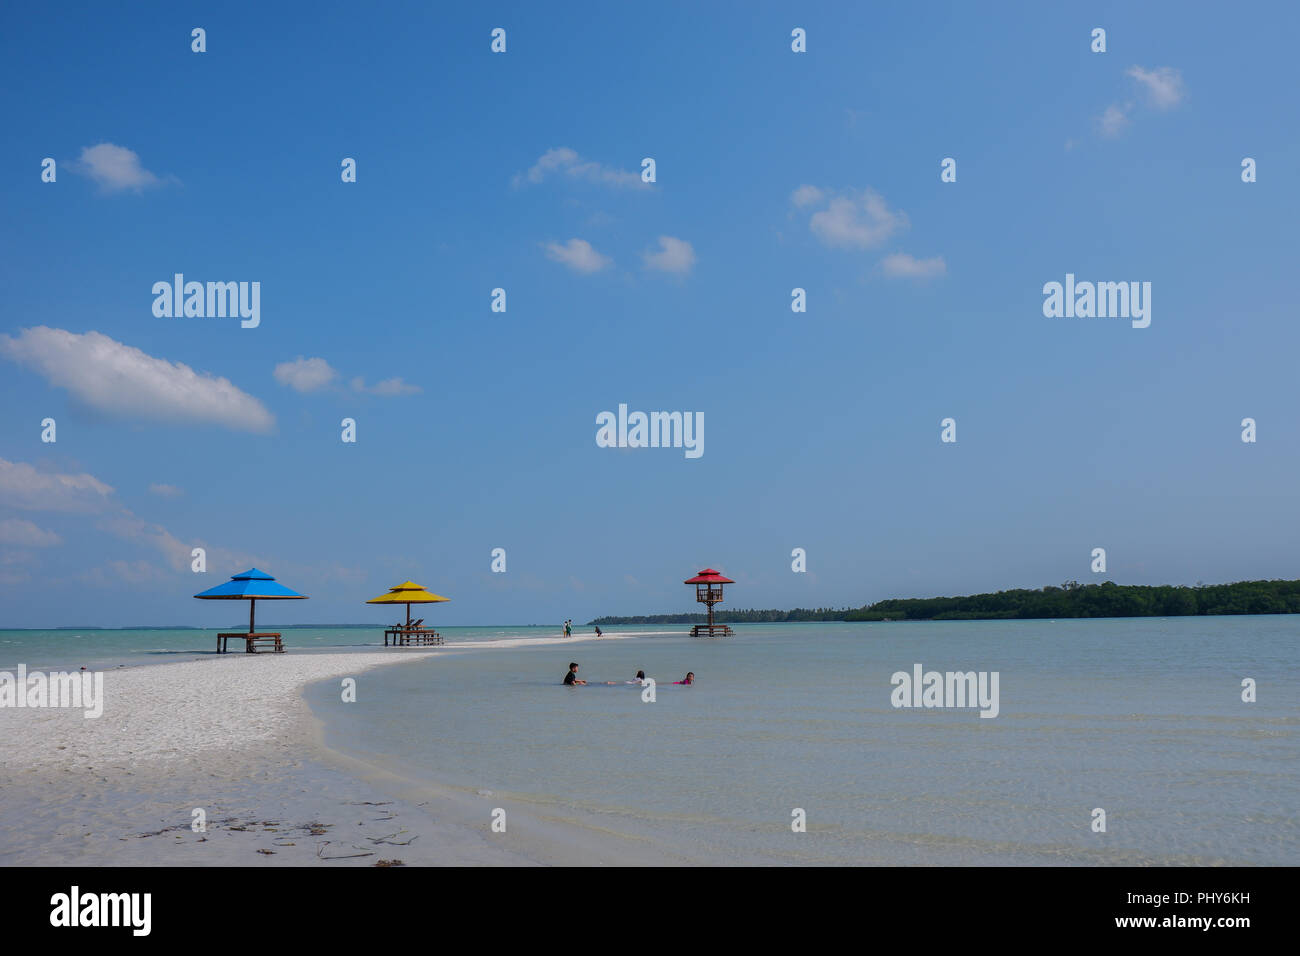 Hermosa playa de arena blanca bajo el cielo azul en la isla de Belitung, Indonesia. Hermosa playa con olas tranquilas, perfecta para destinos turísticos Foto de stock